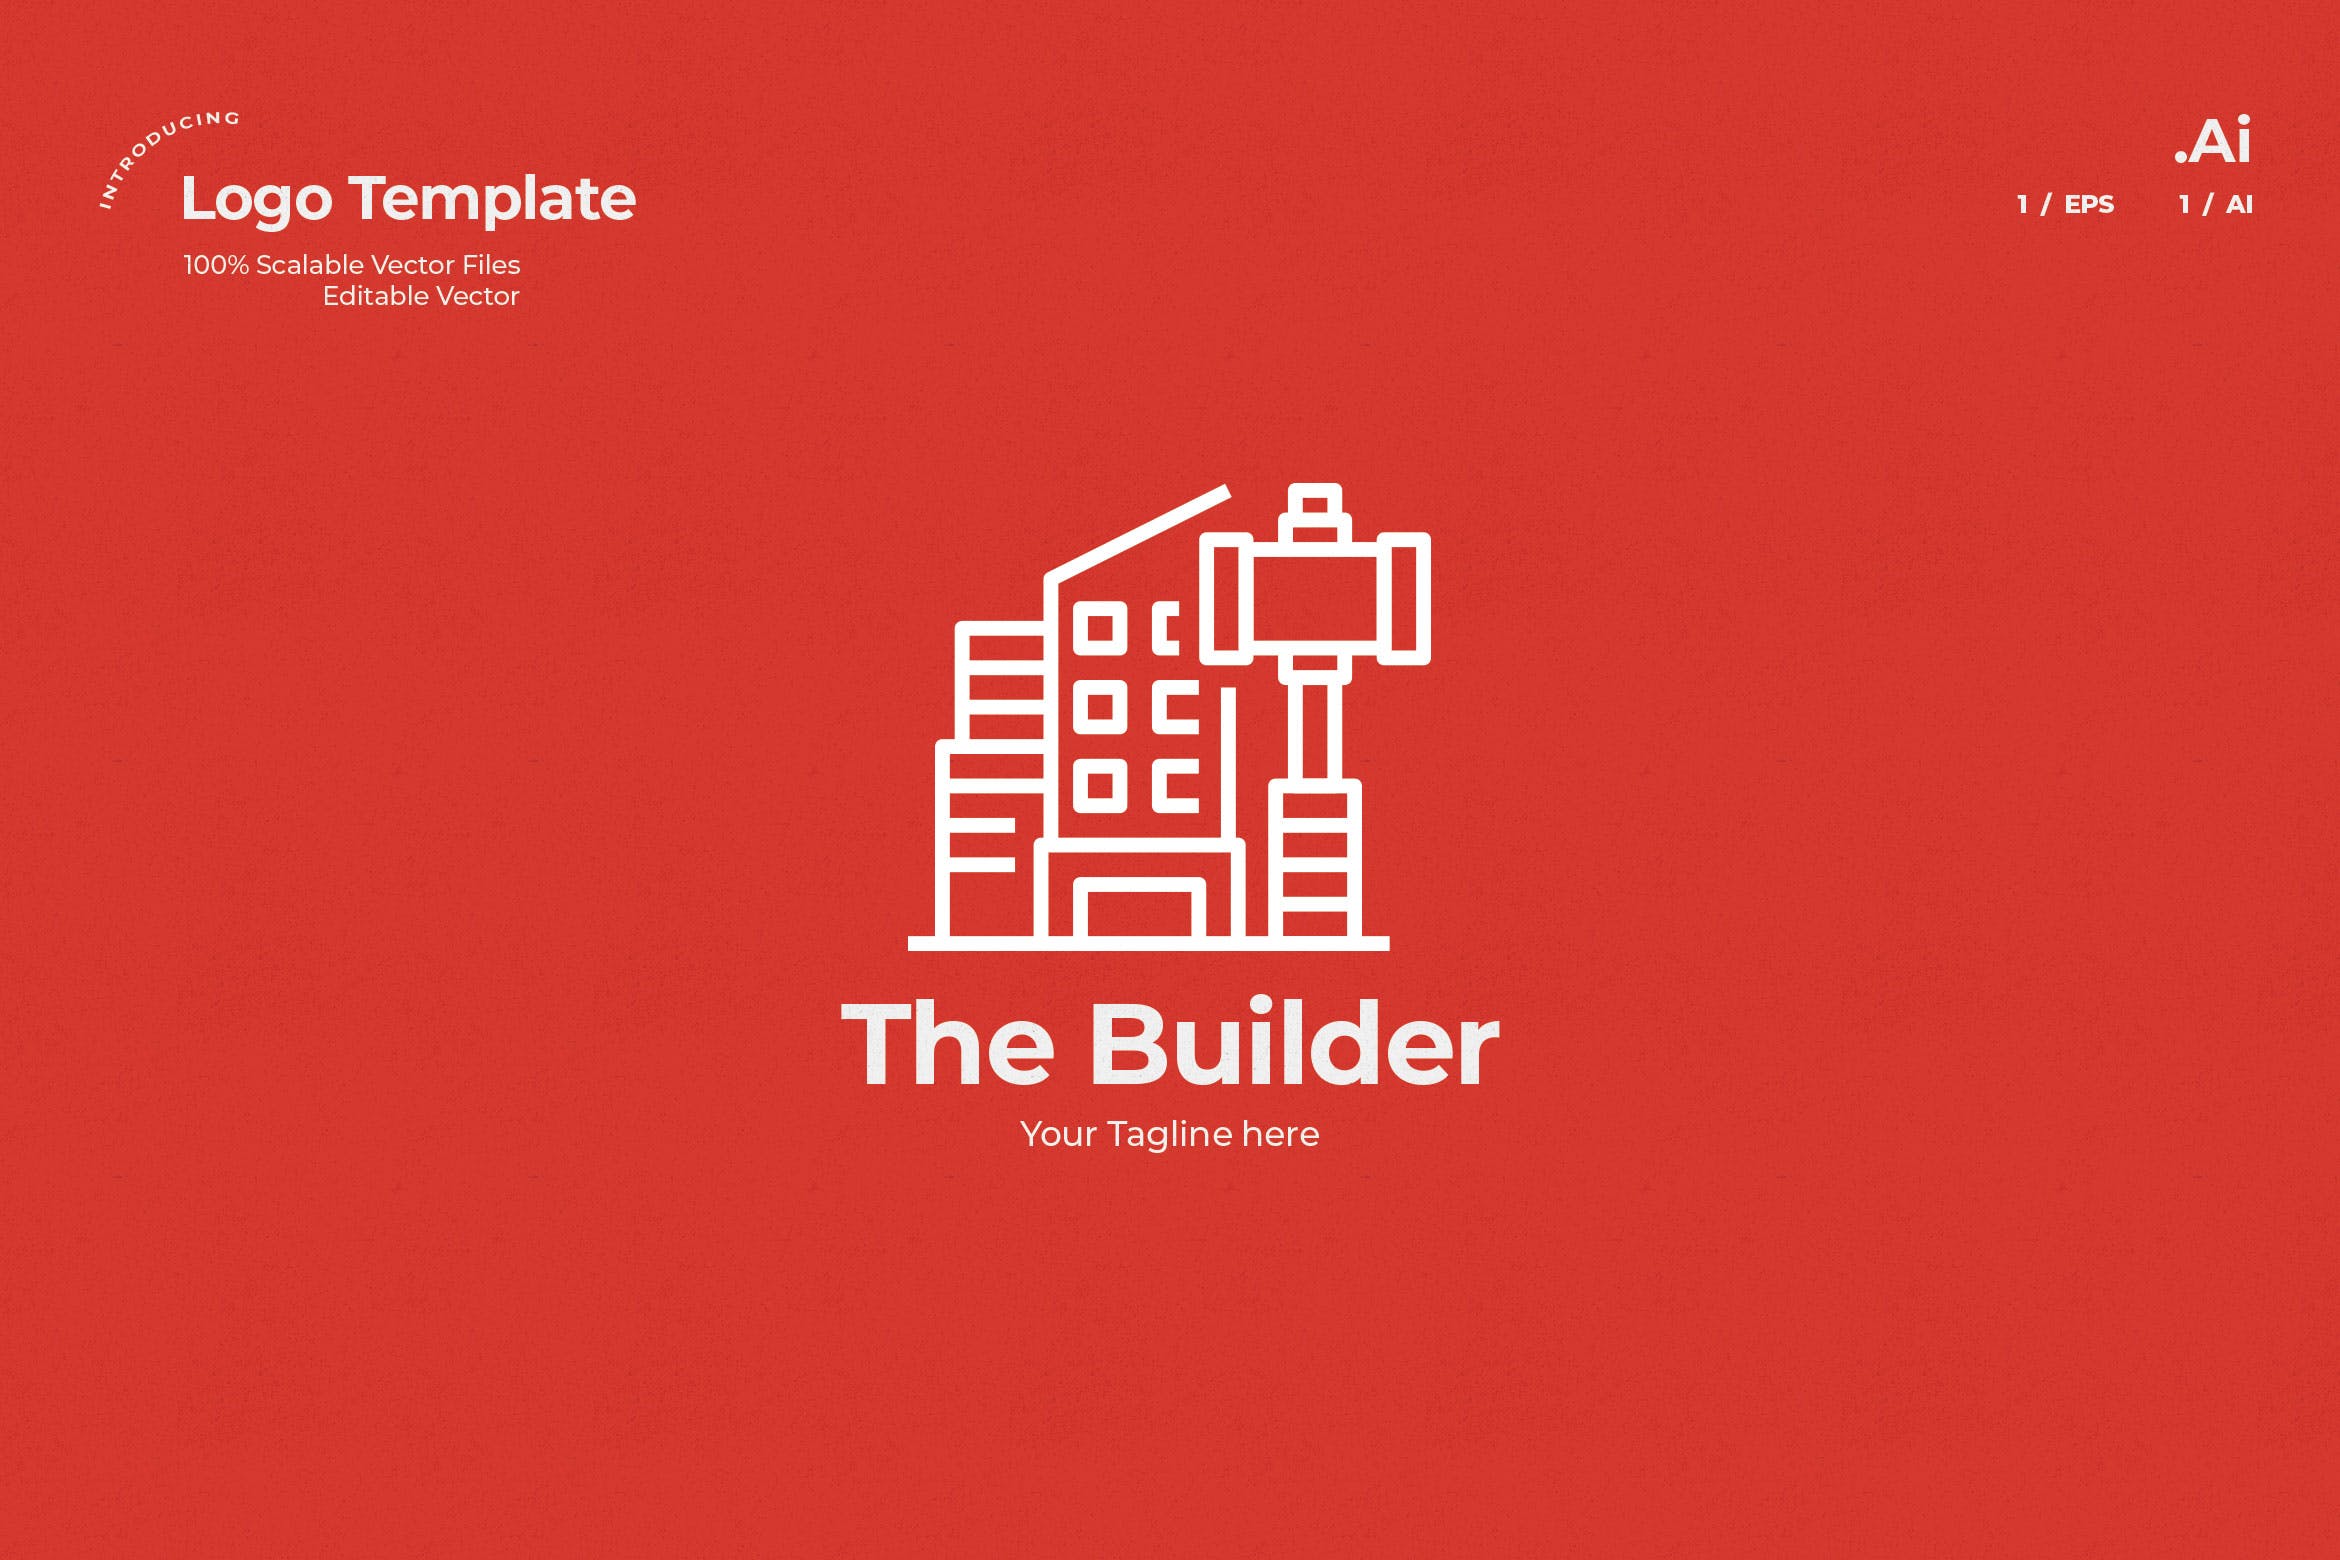 建筑设计/建筑施工企业Logo设计素材中国精选模板 The Builder Logo插图